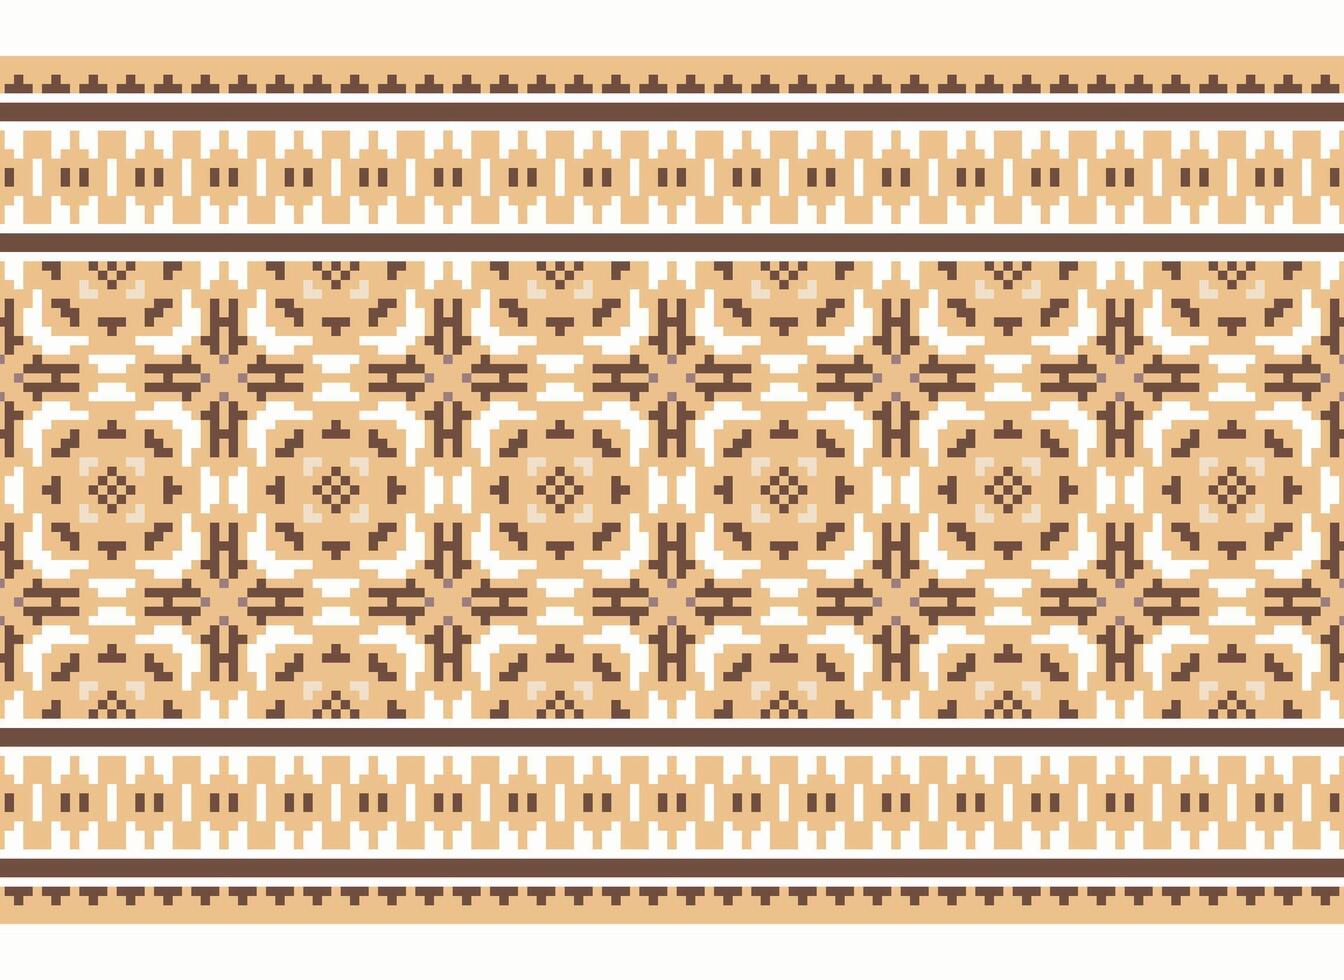 een bloemen pixel kunst patroon Aan grijs achtergrond.geometrisch etnisch oosters borduurwerk vector illustratie. pixel stijl, abstract achtergrond, kruis steek.ontwerp voor textuur, kleding stof, lap, sjaal, afdrukken